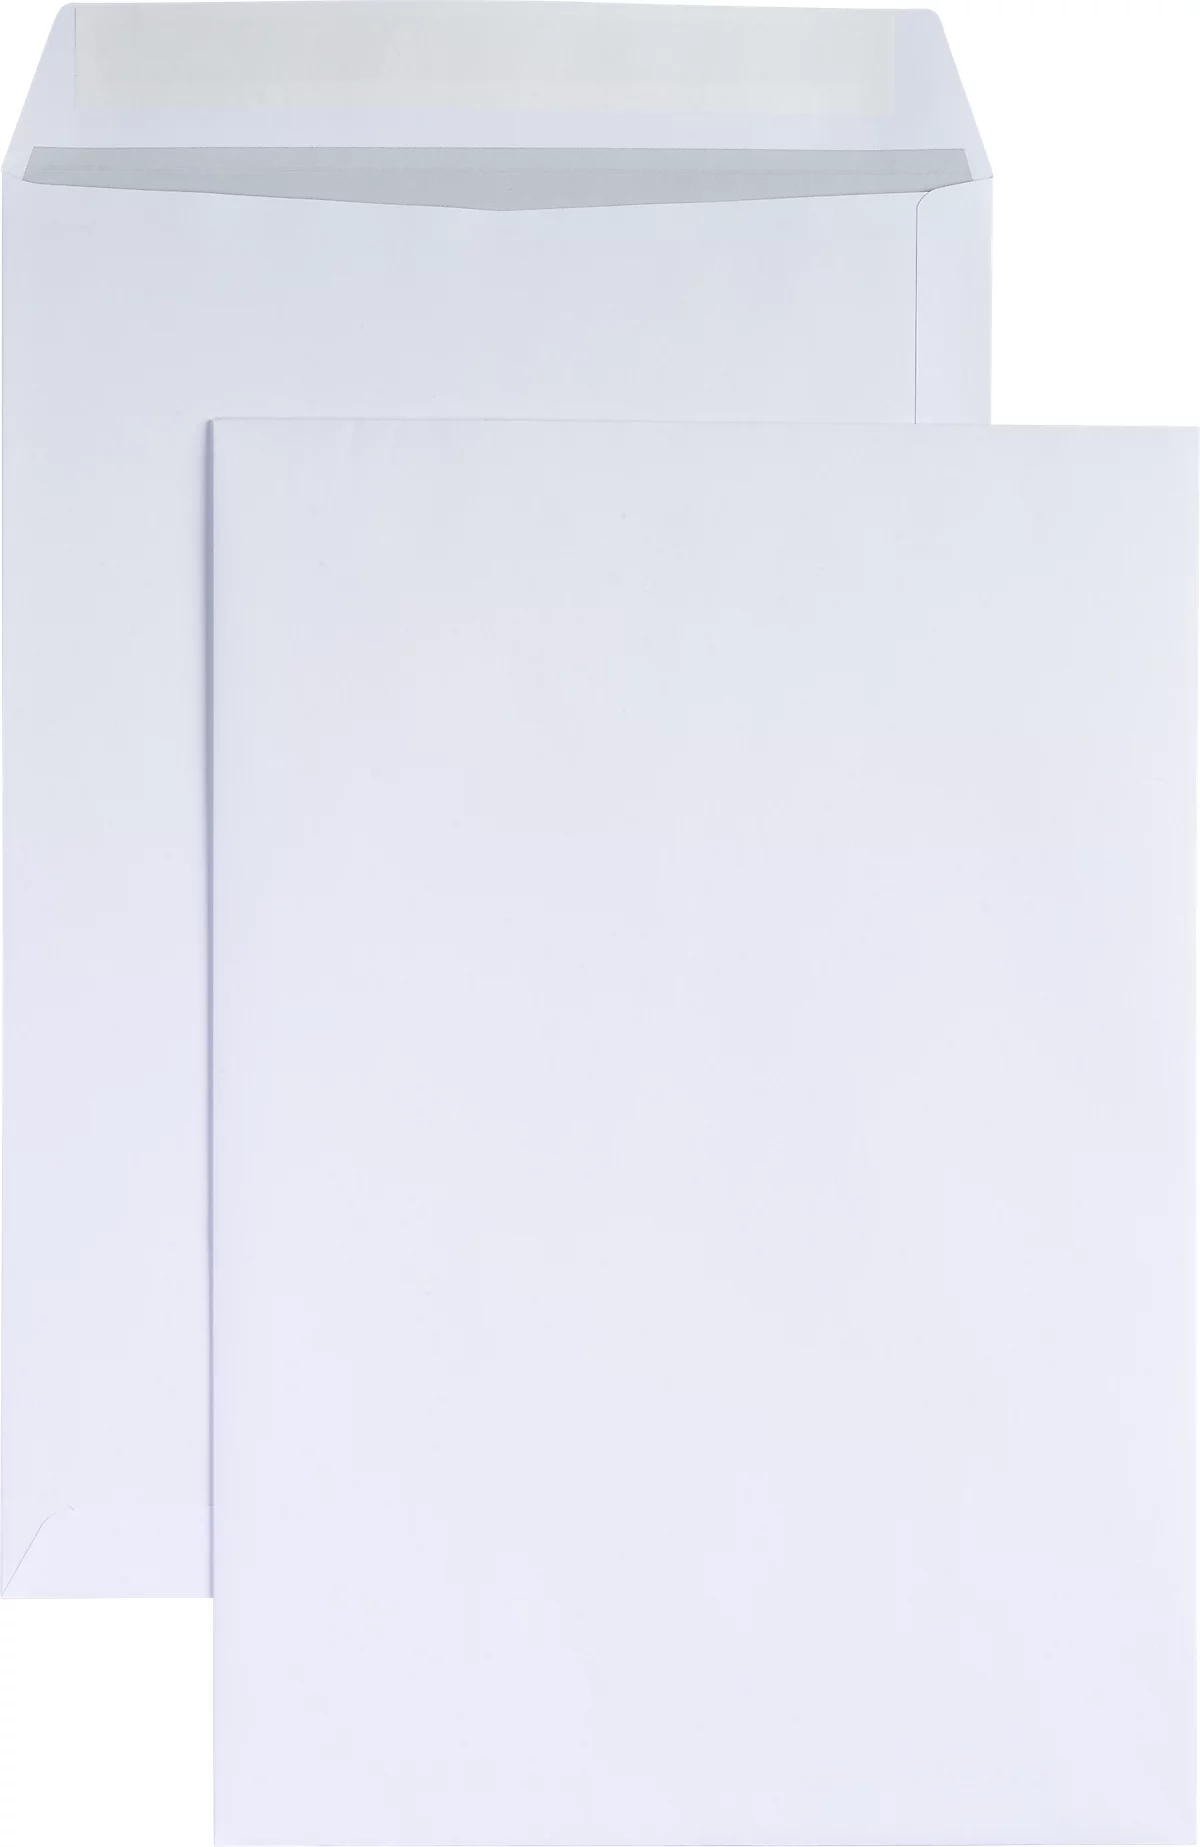 Schäfer Shop Genius Bolsas de correo blancas B4, 120 g/m², 250 unidades